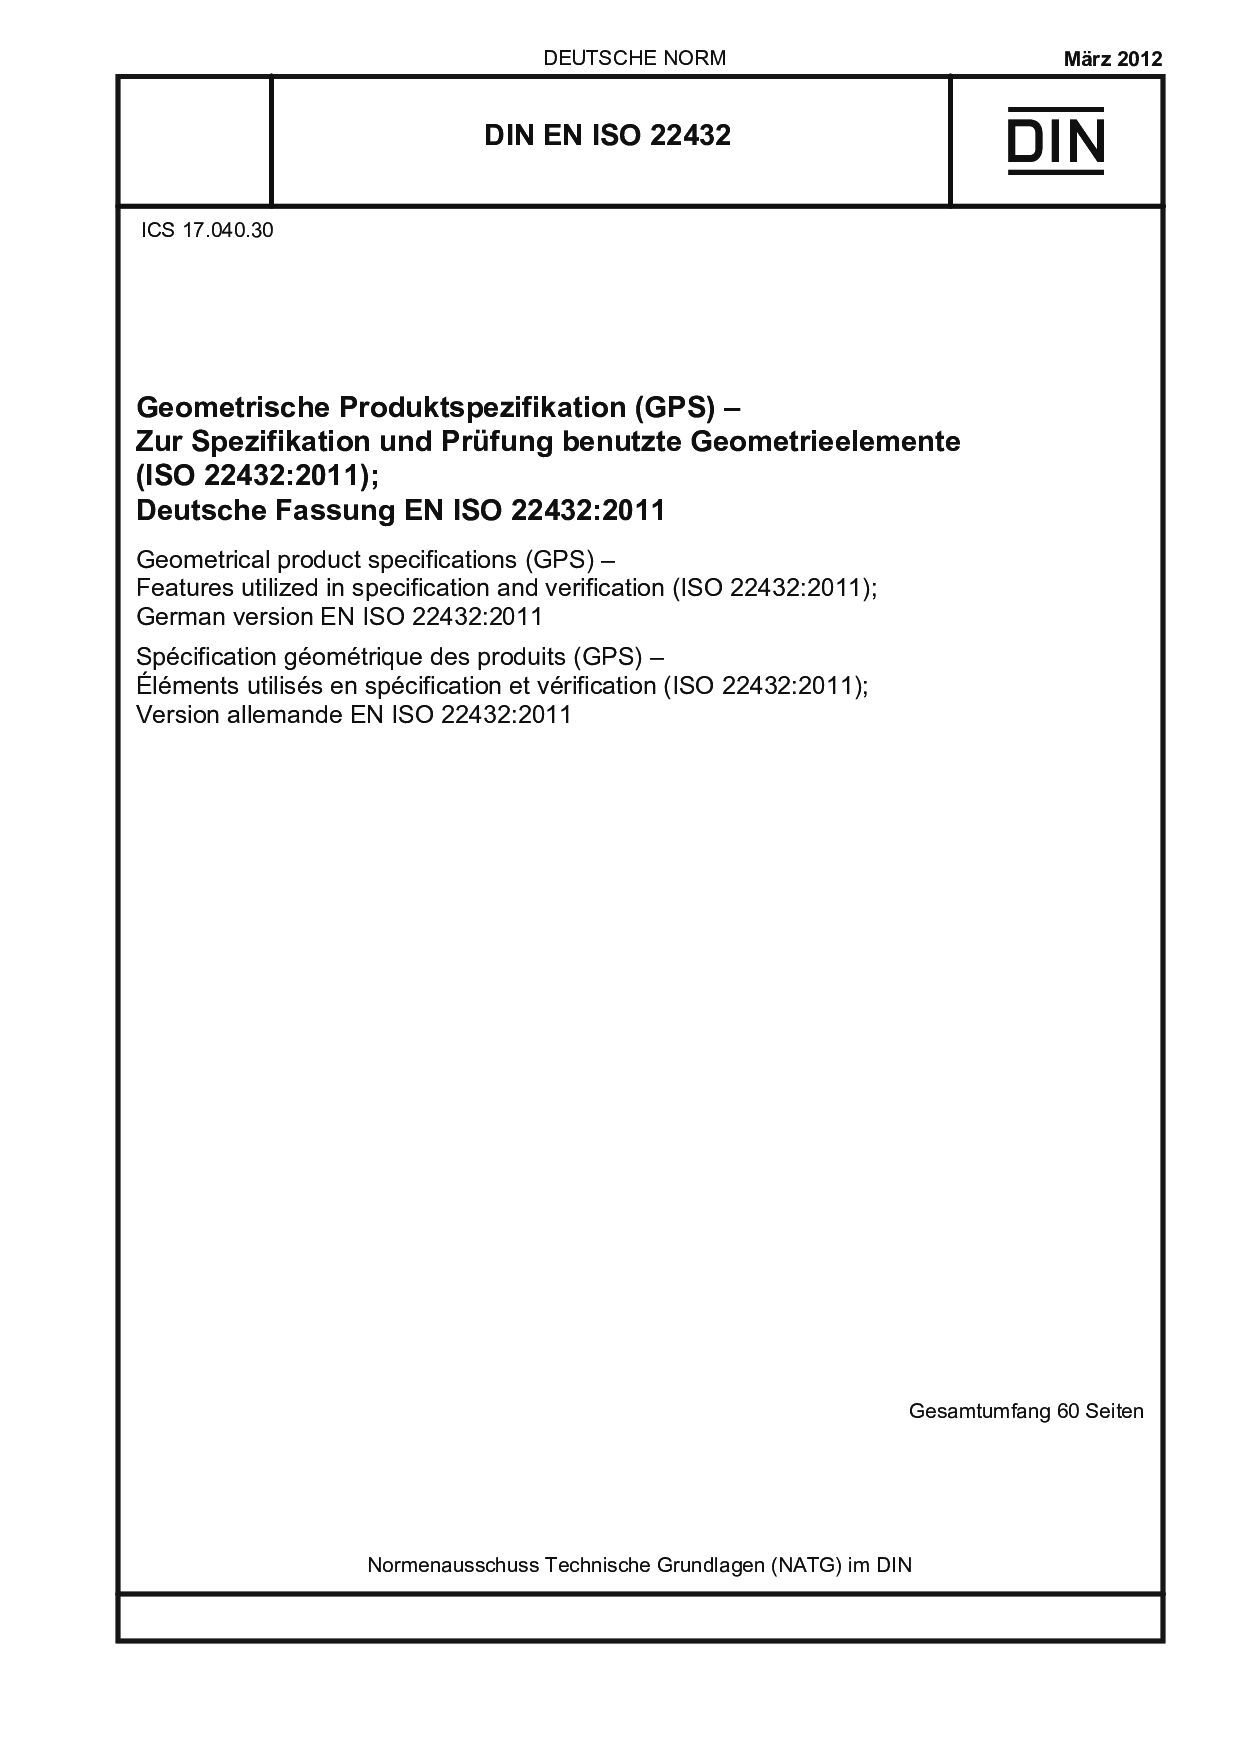 DIN EN ISO 22432:2012封面图